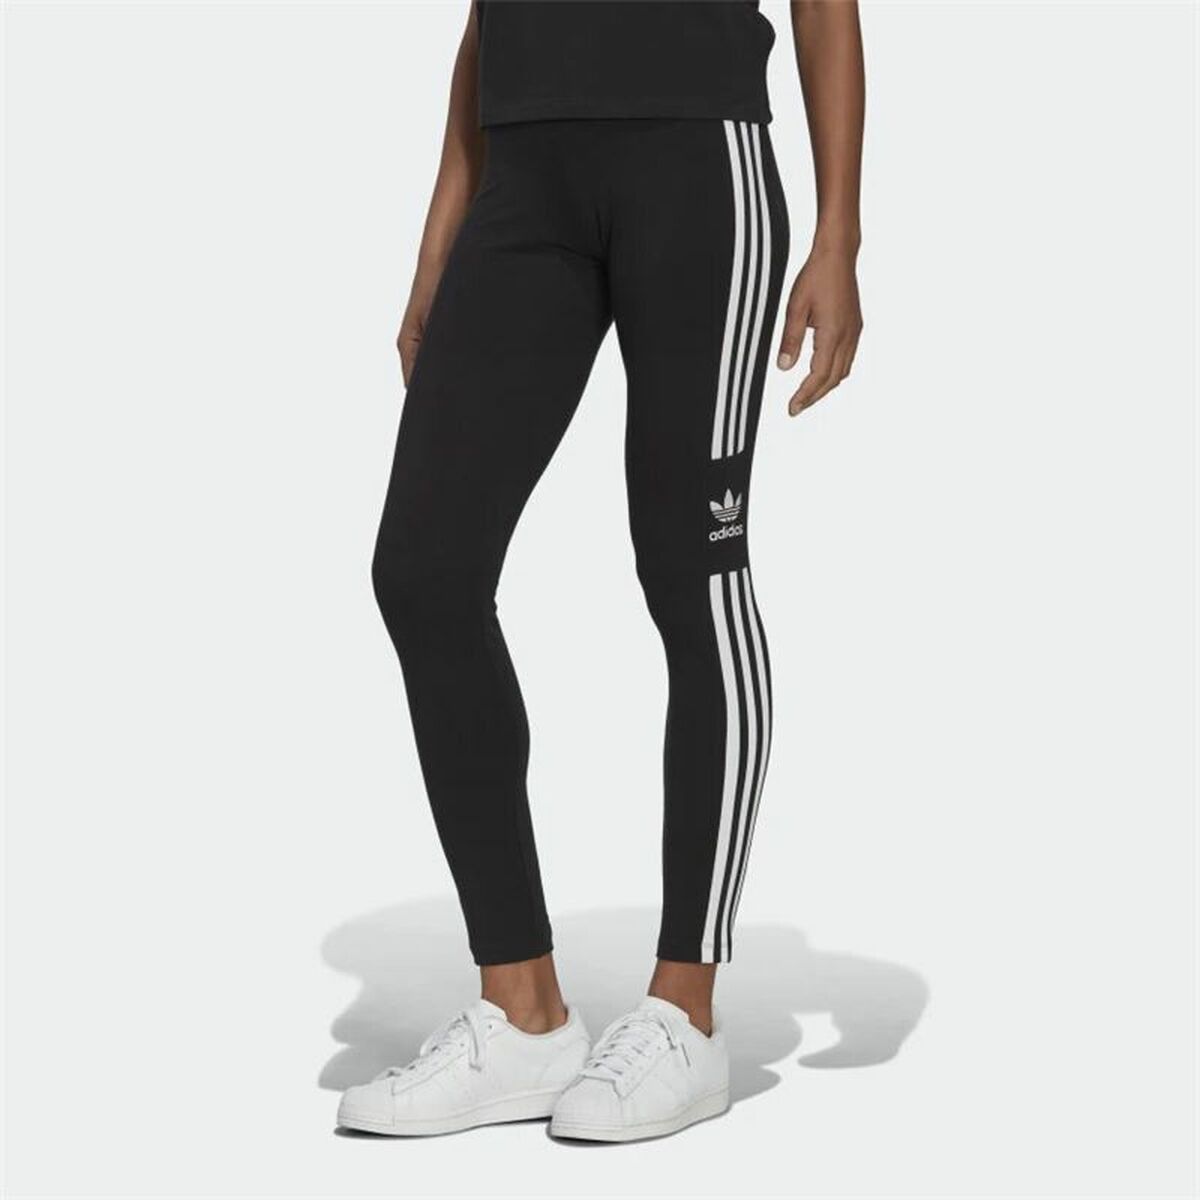 Sport leggings for Women Adidas Adicolor 3 Stripes Trefoil Black